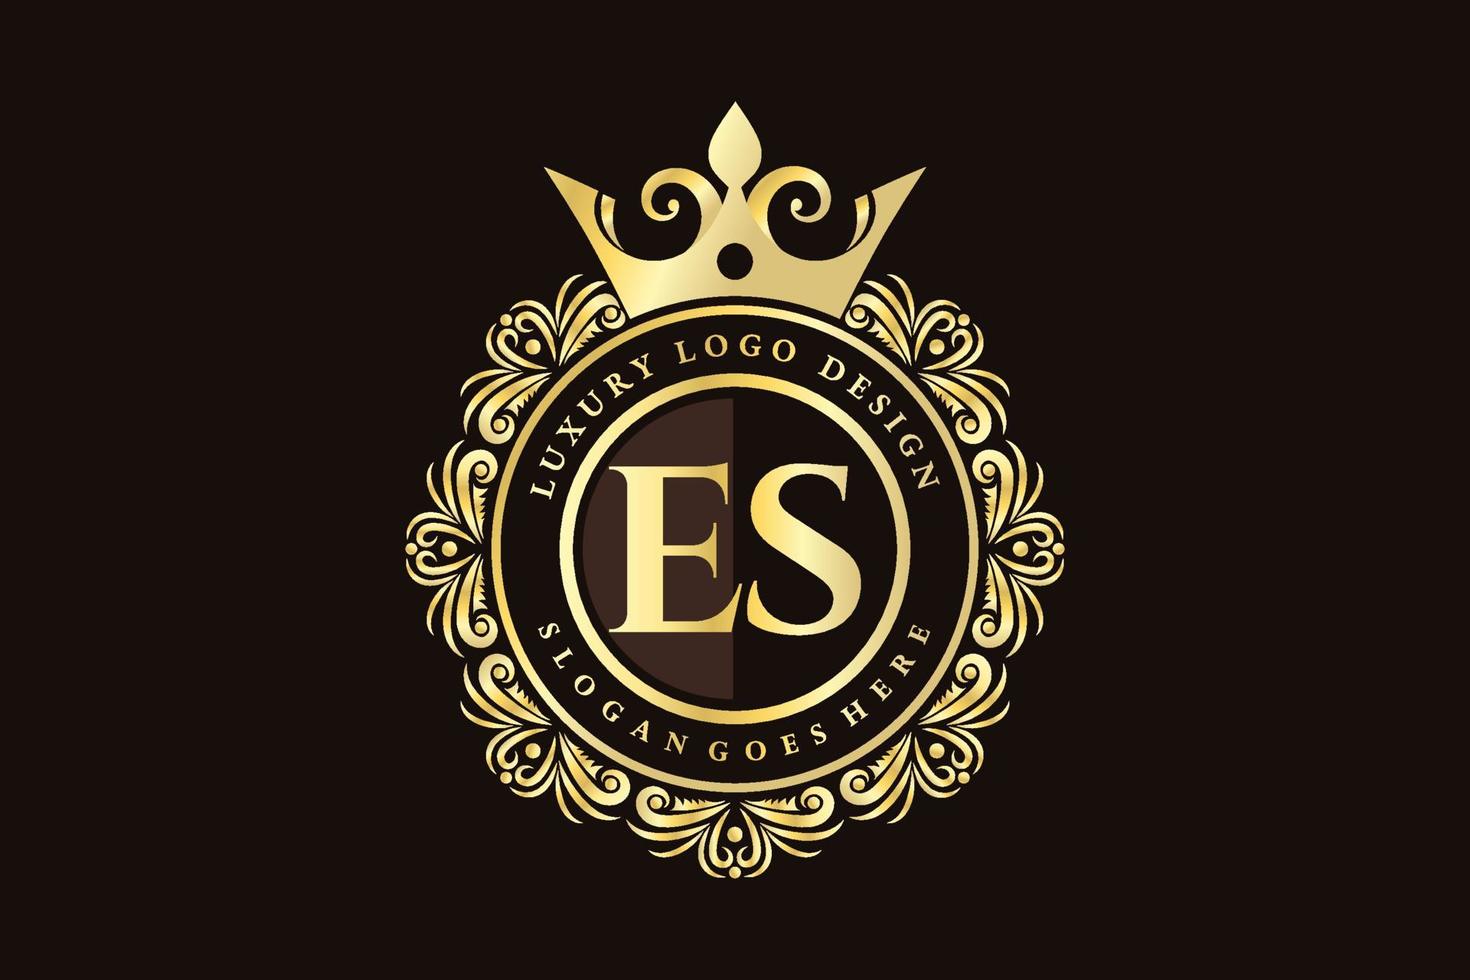 es iniziale lettera oro calligrafico femminile floreale mano disegnato araldico monogramma antico Vintage ▾ stile lusso logo design premio vettore